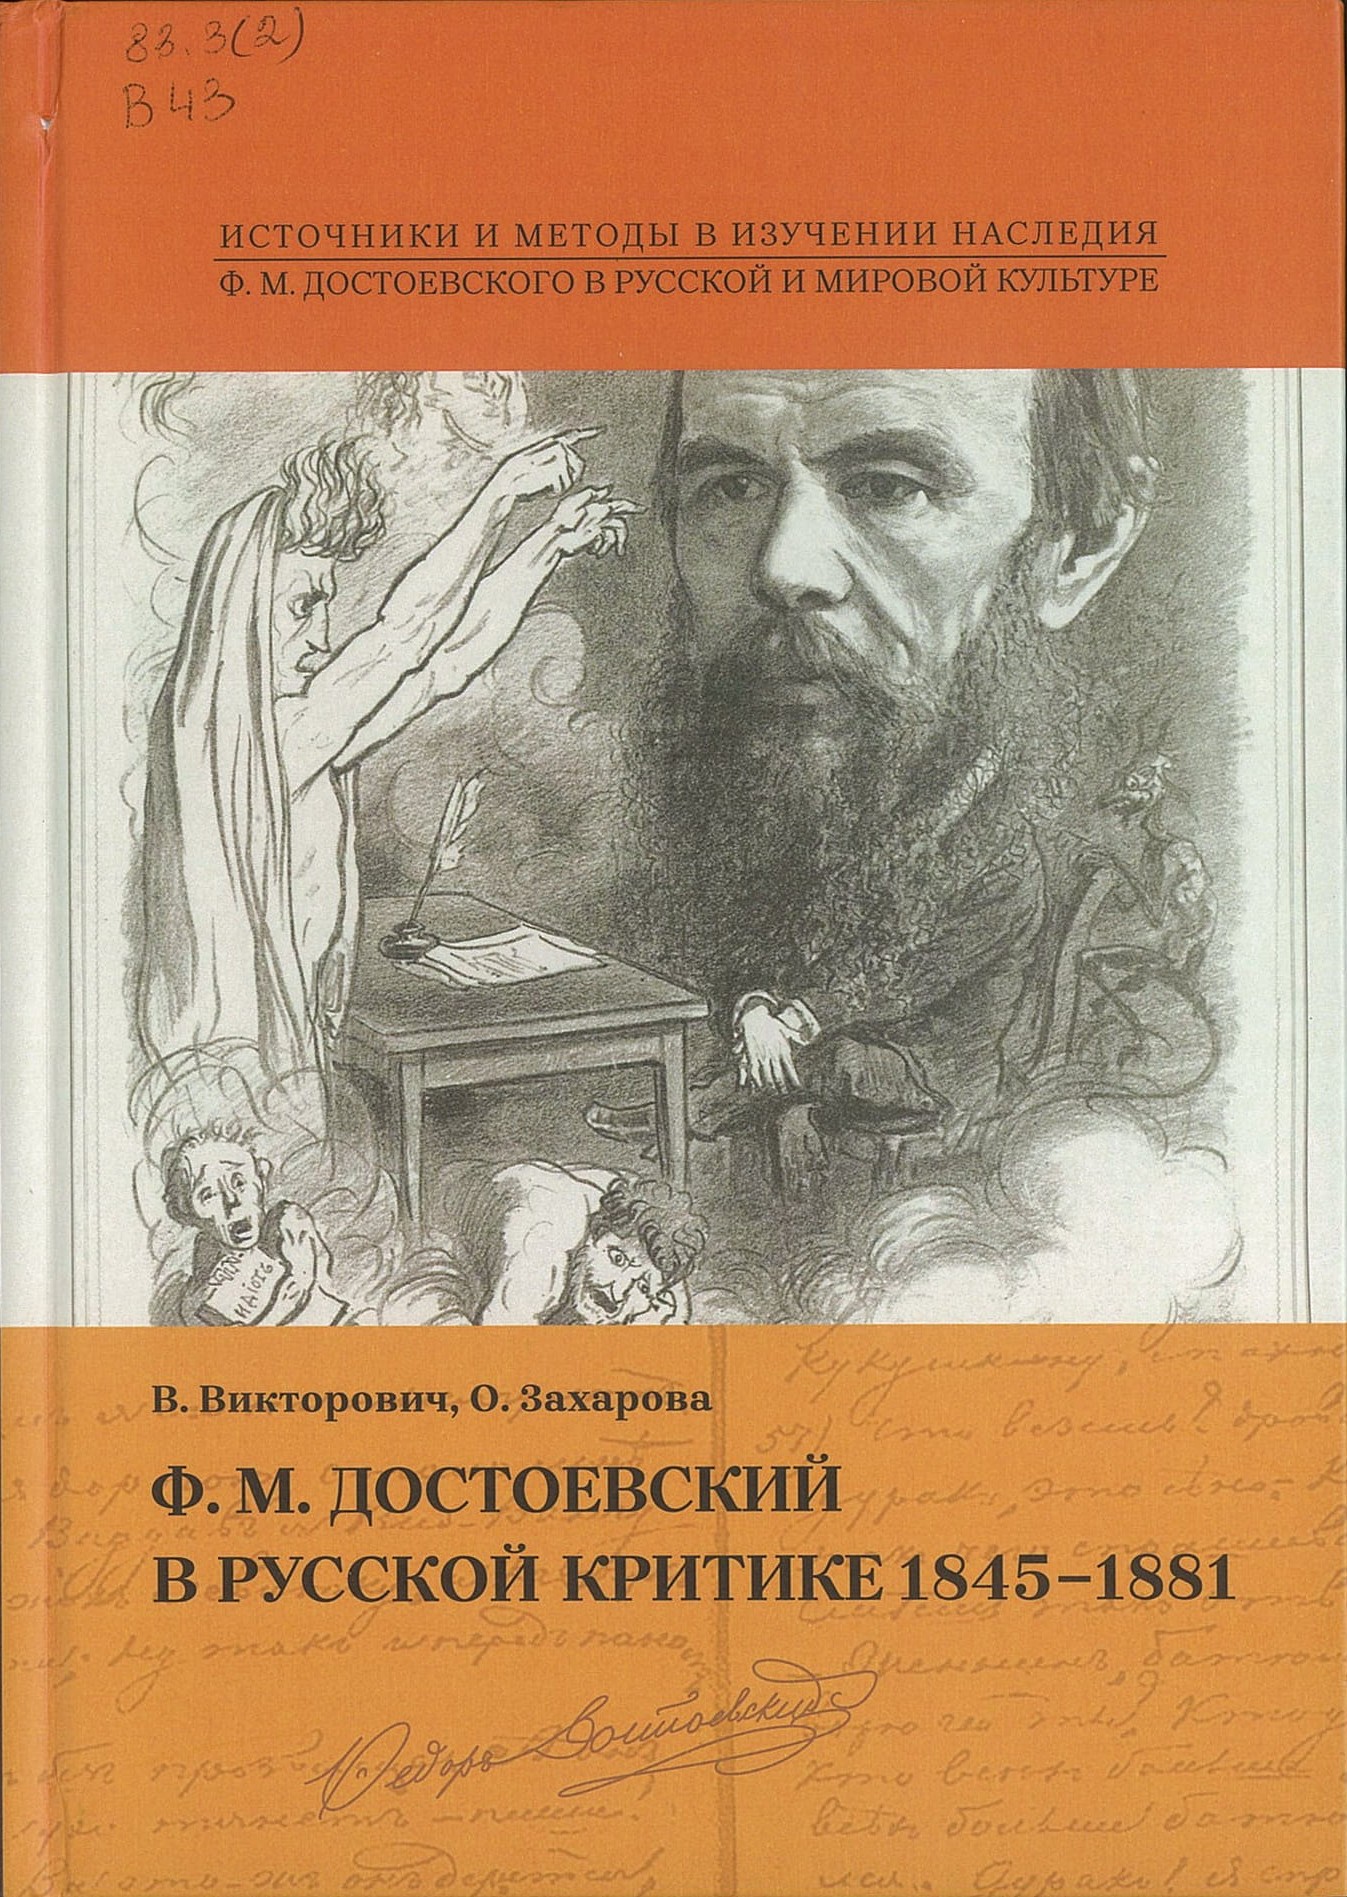 Викторович, В. А. Ф. М. Достоевский в русской критике 1845-1881